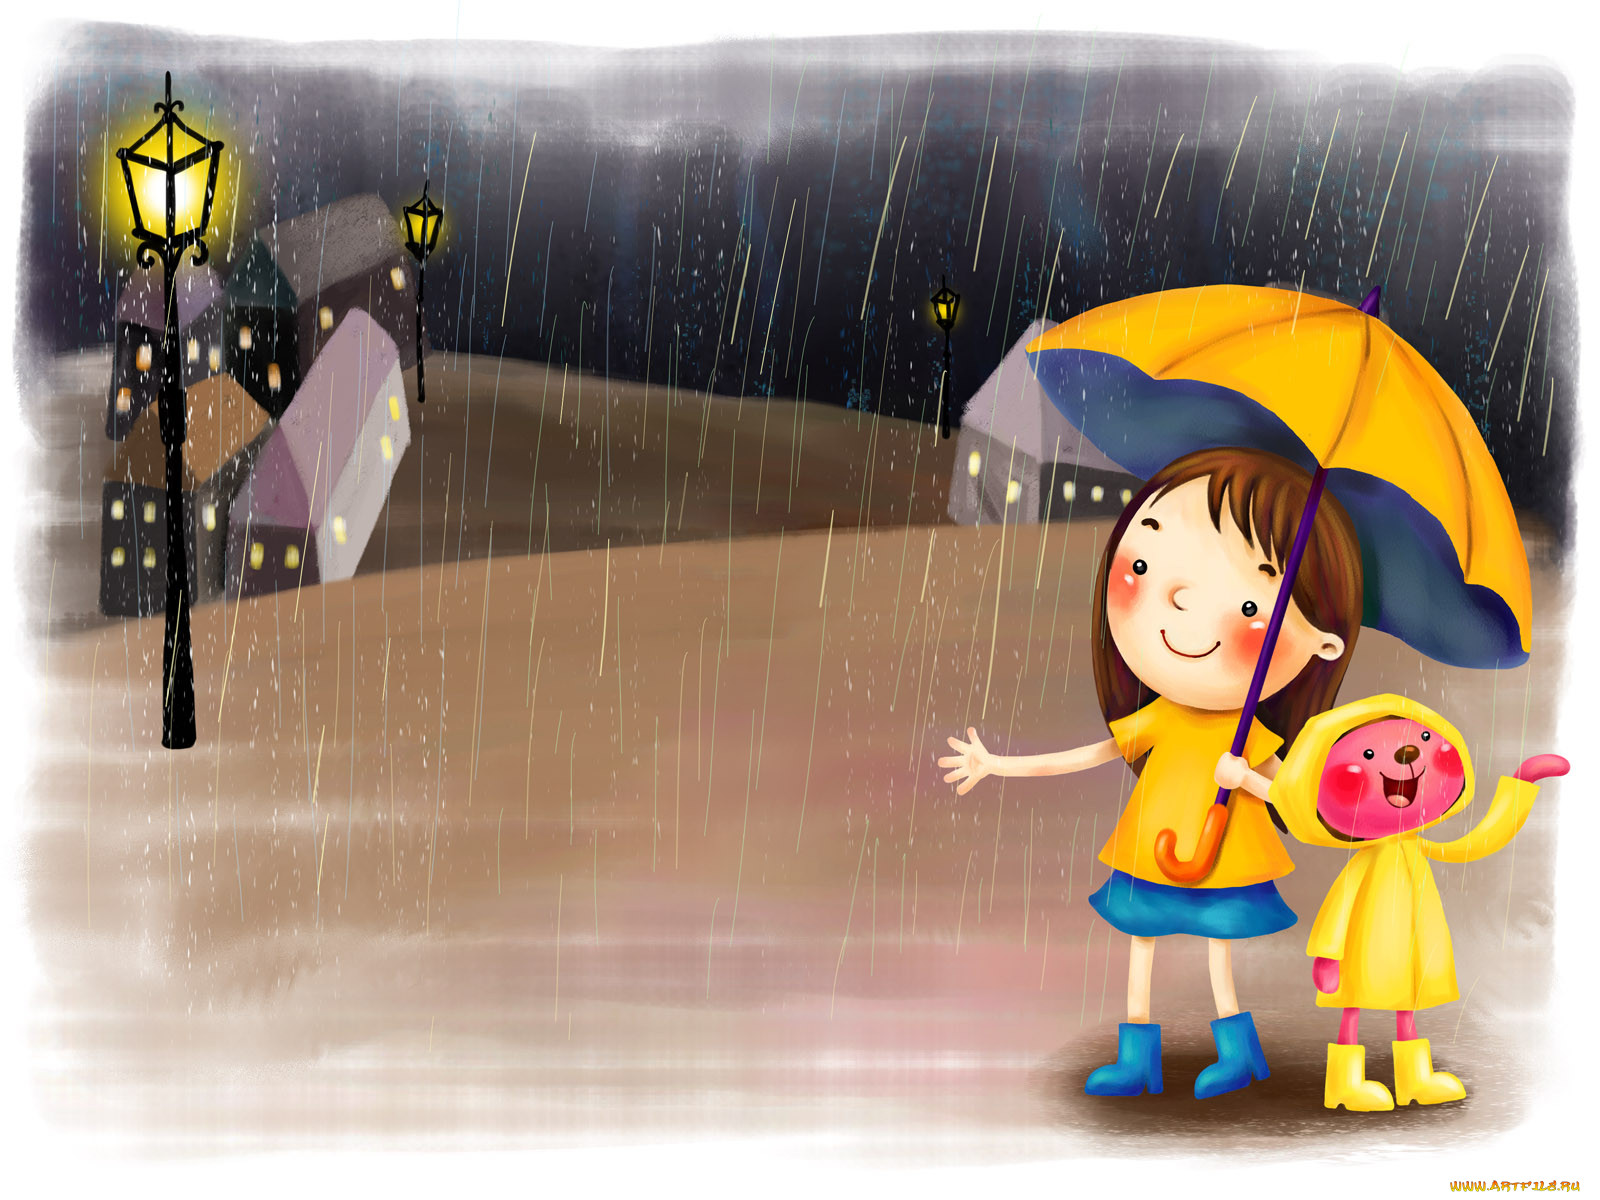 Капель стучит по крышам. День прогвлов под Дождкм. Дети дождя. Дождливый день. Дождь рисунок.